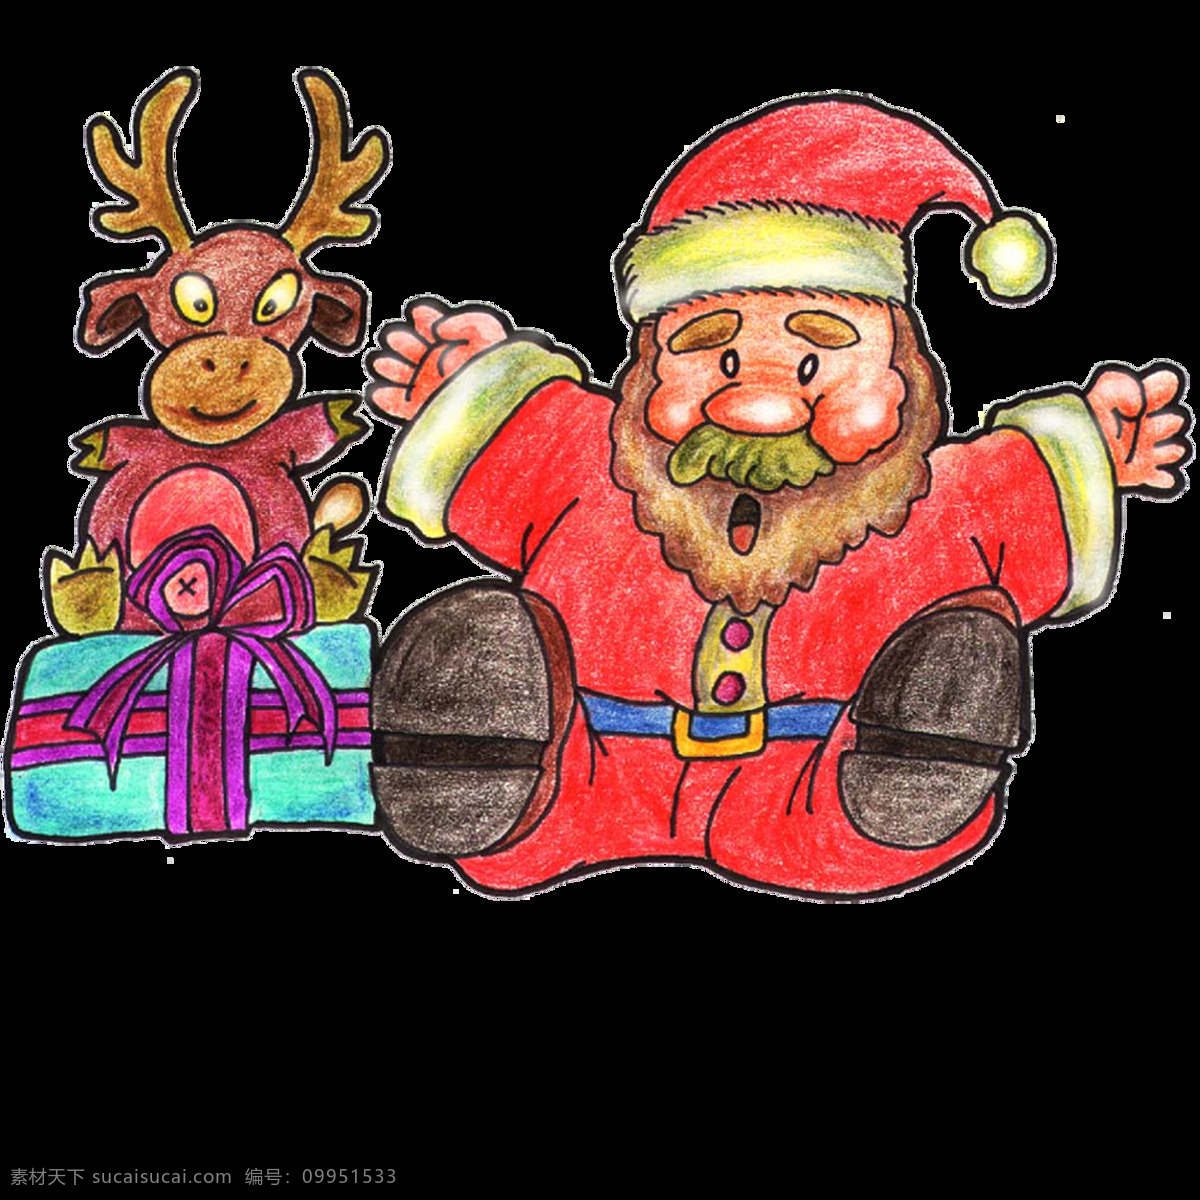 唯美 创意 小鹿 老人 绘画 可爱 卡通圣诞老人 生动 形象 鲜明